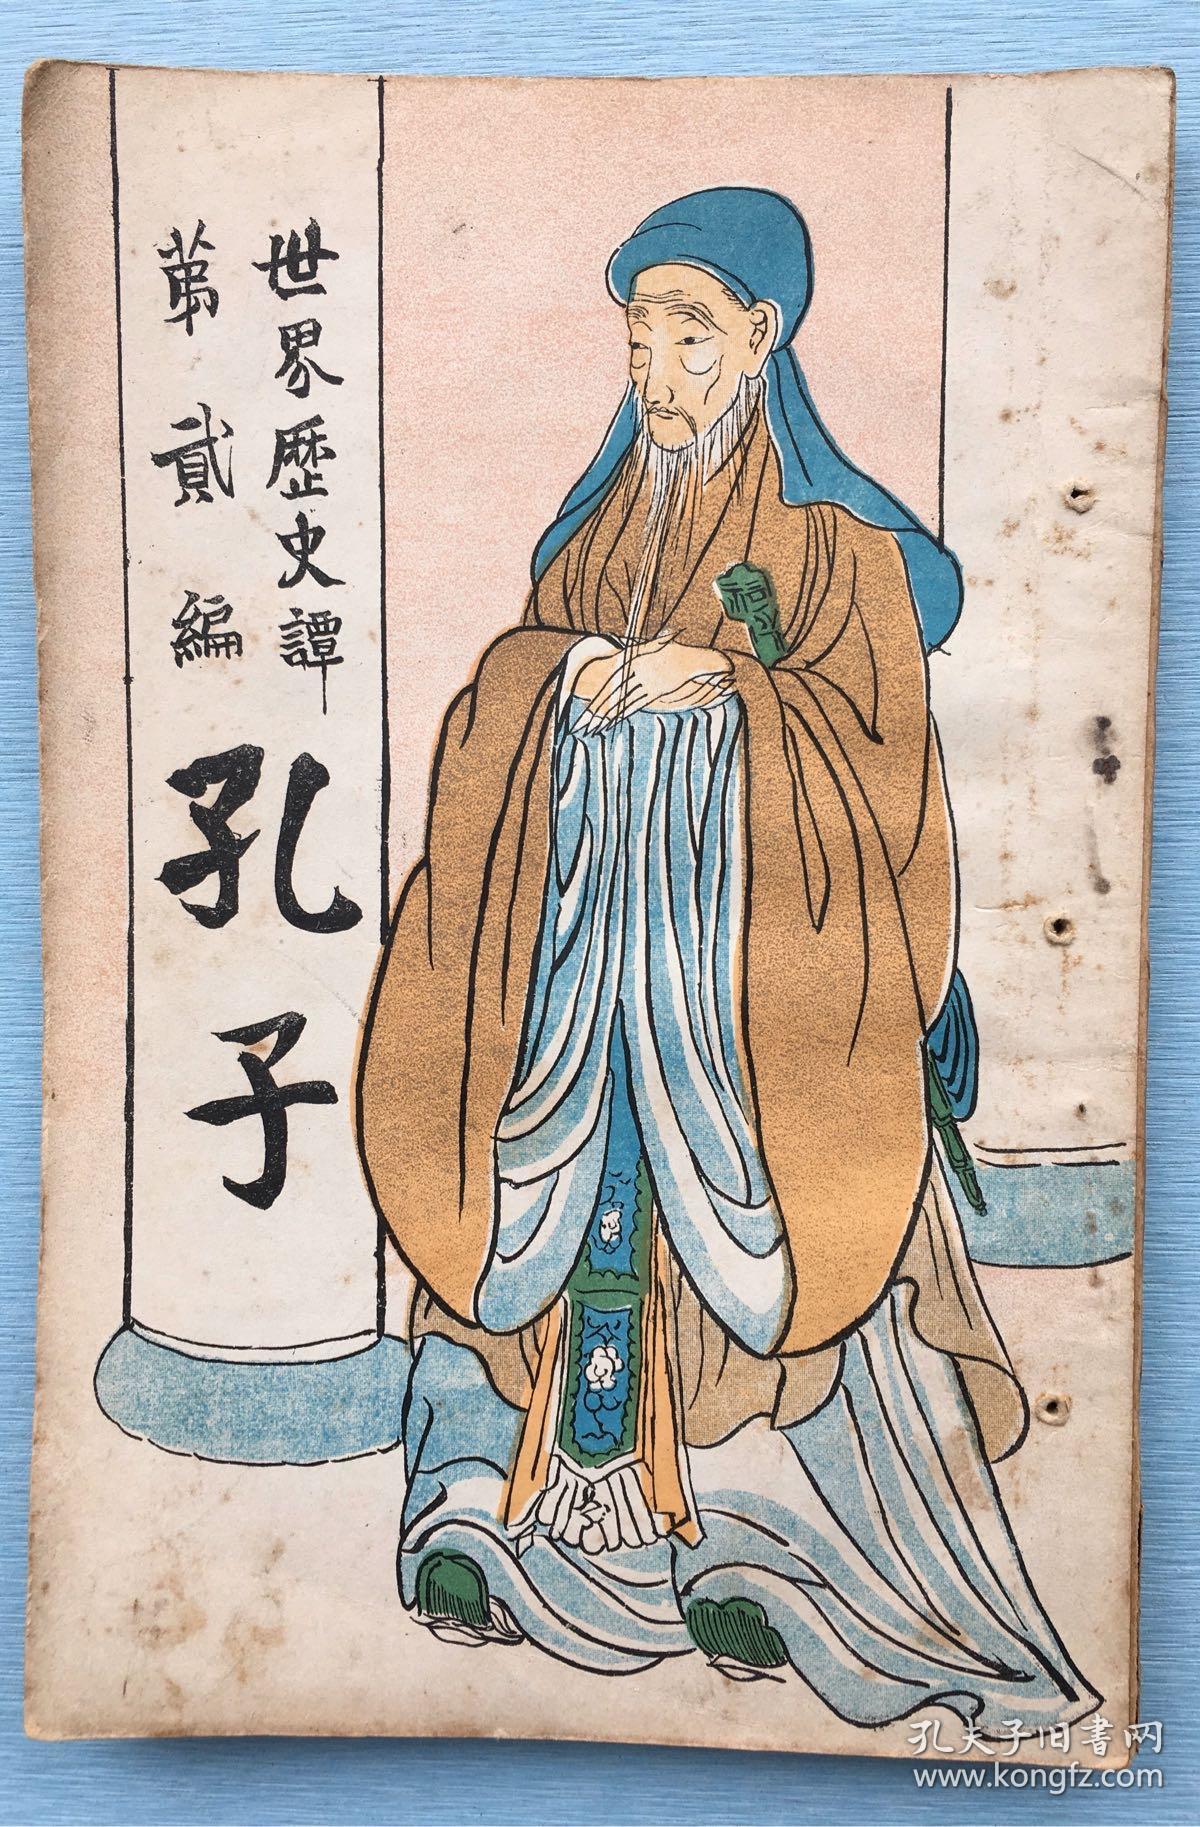 日本儒学在古代日本的传播与发展有着悠久的历史